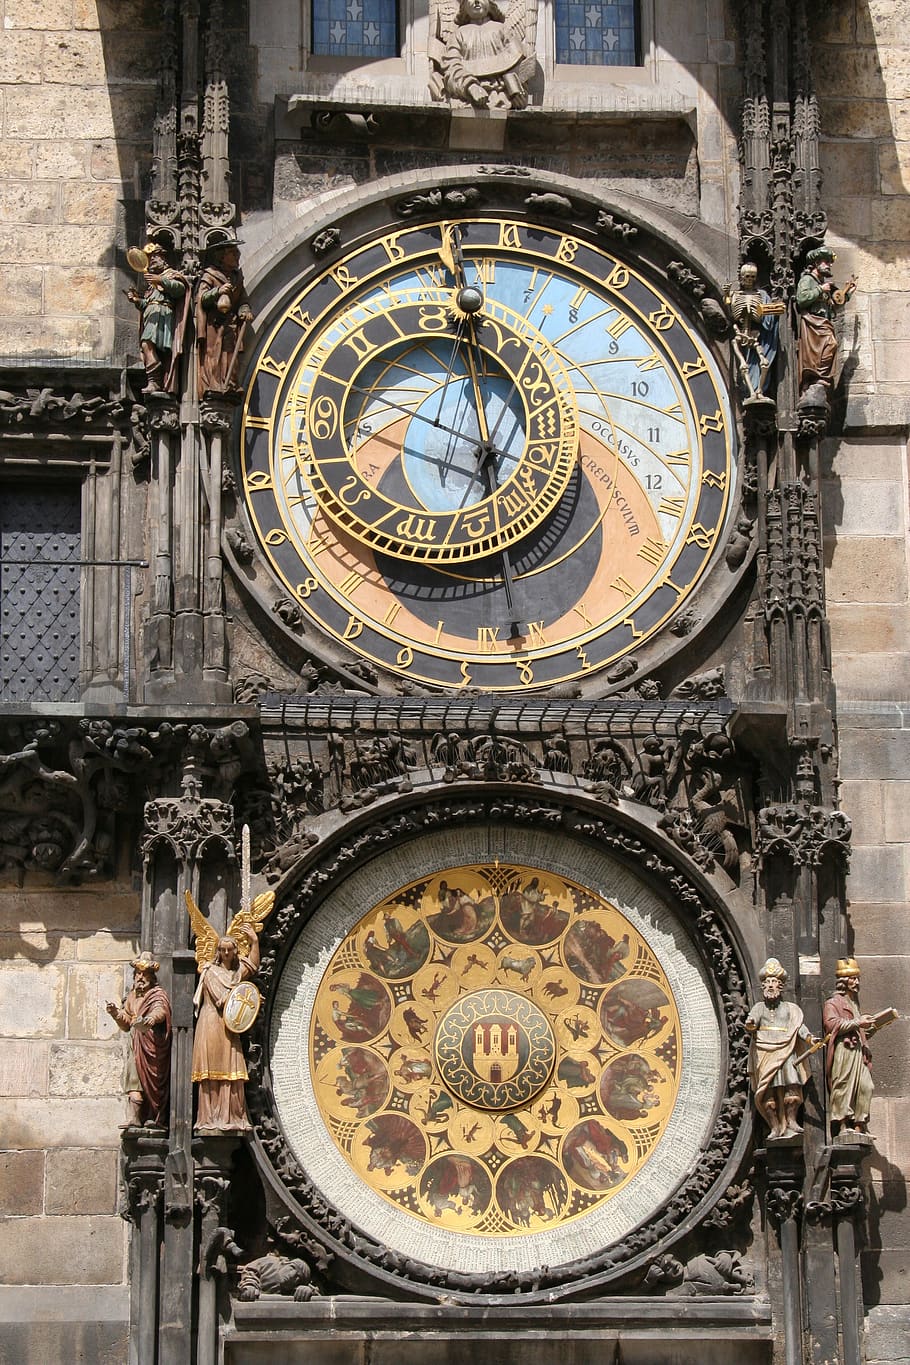 relógio, hora, o relógio astronômico, antiga prefeitura, praga, exterior do edifício, arquitetura, torre do relógio, tempo, algarismo romano